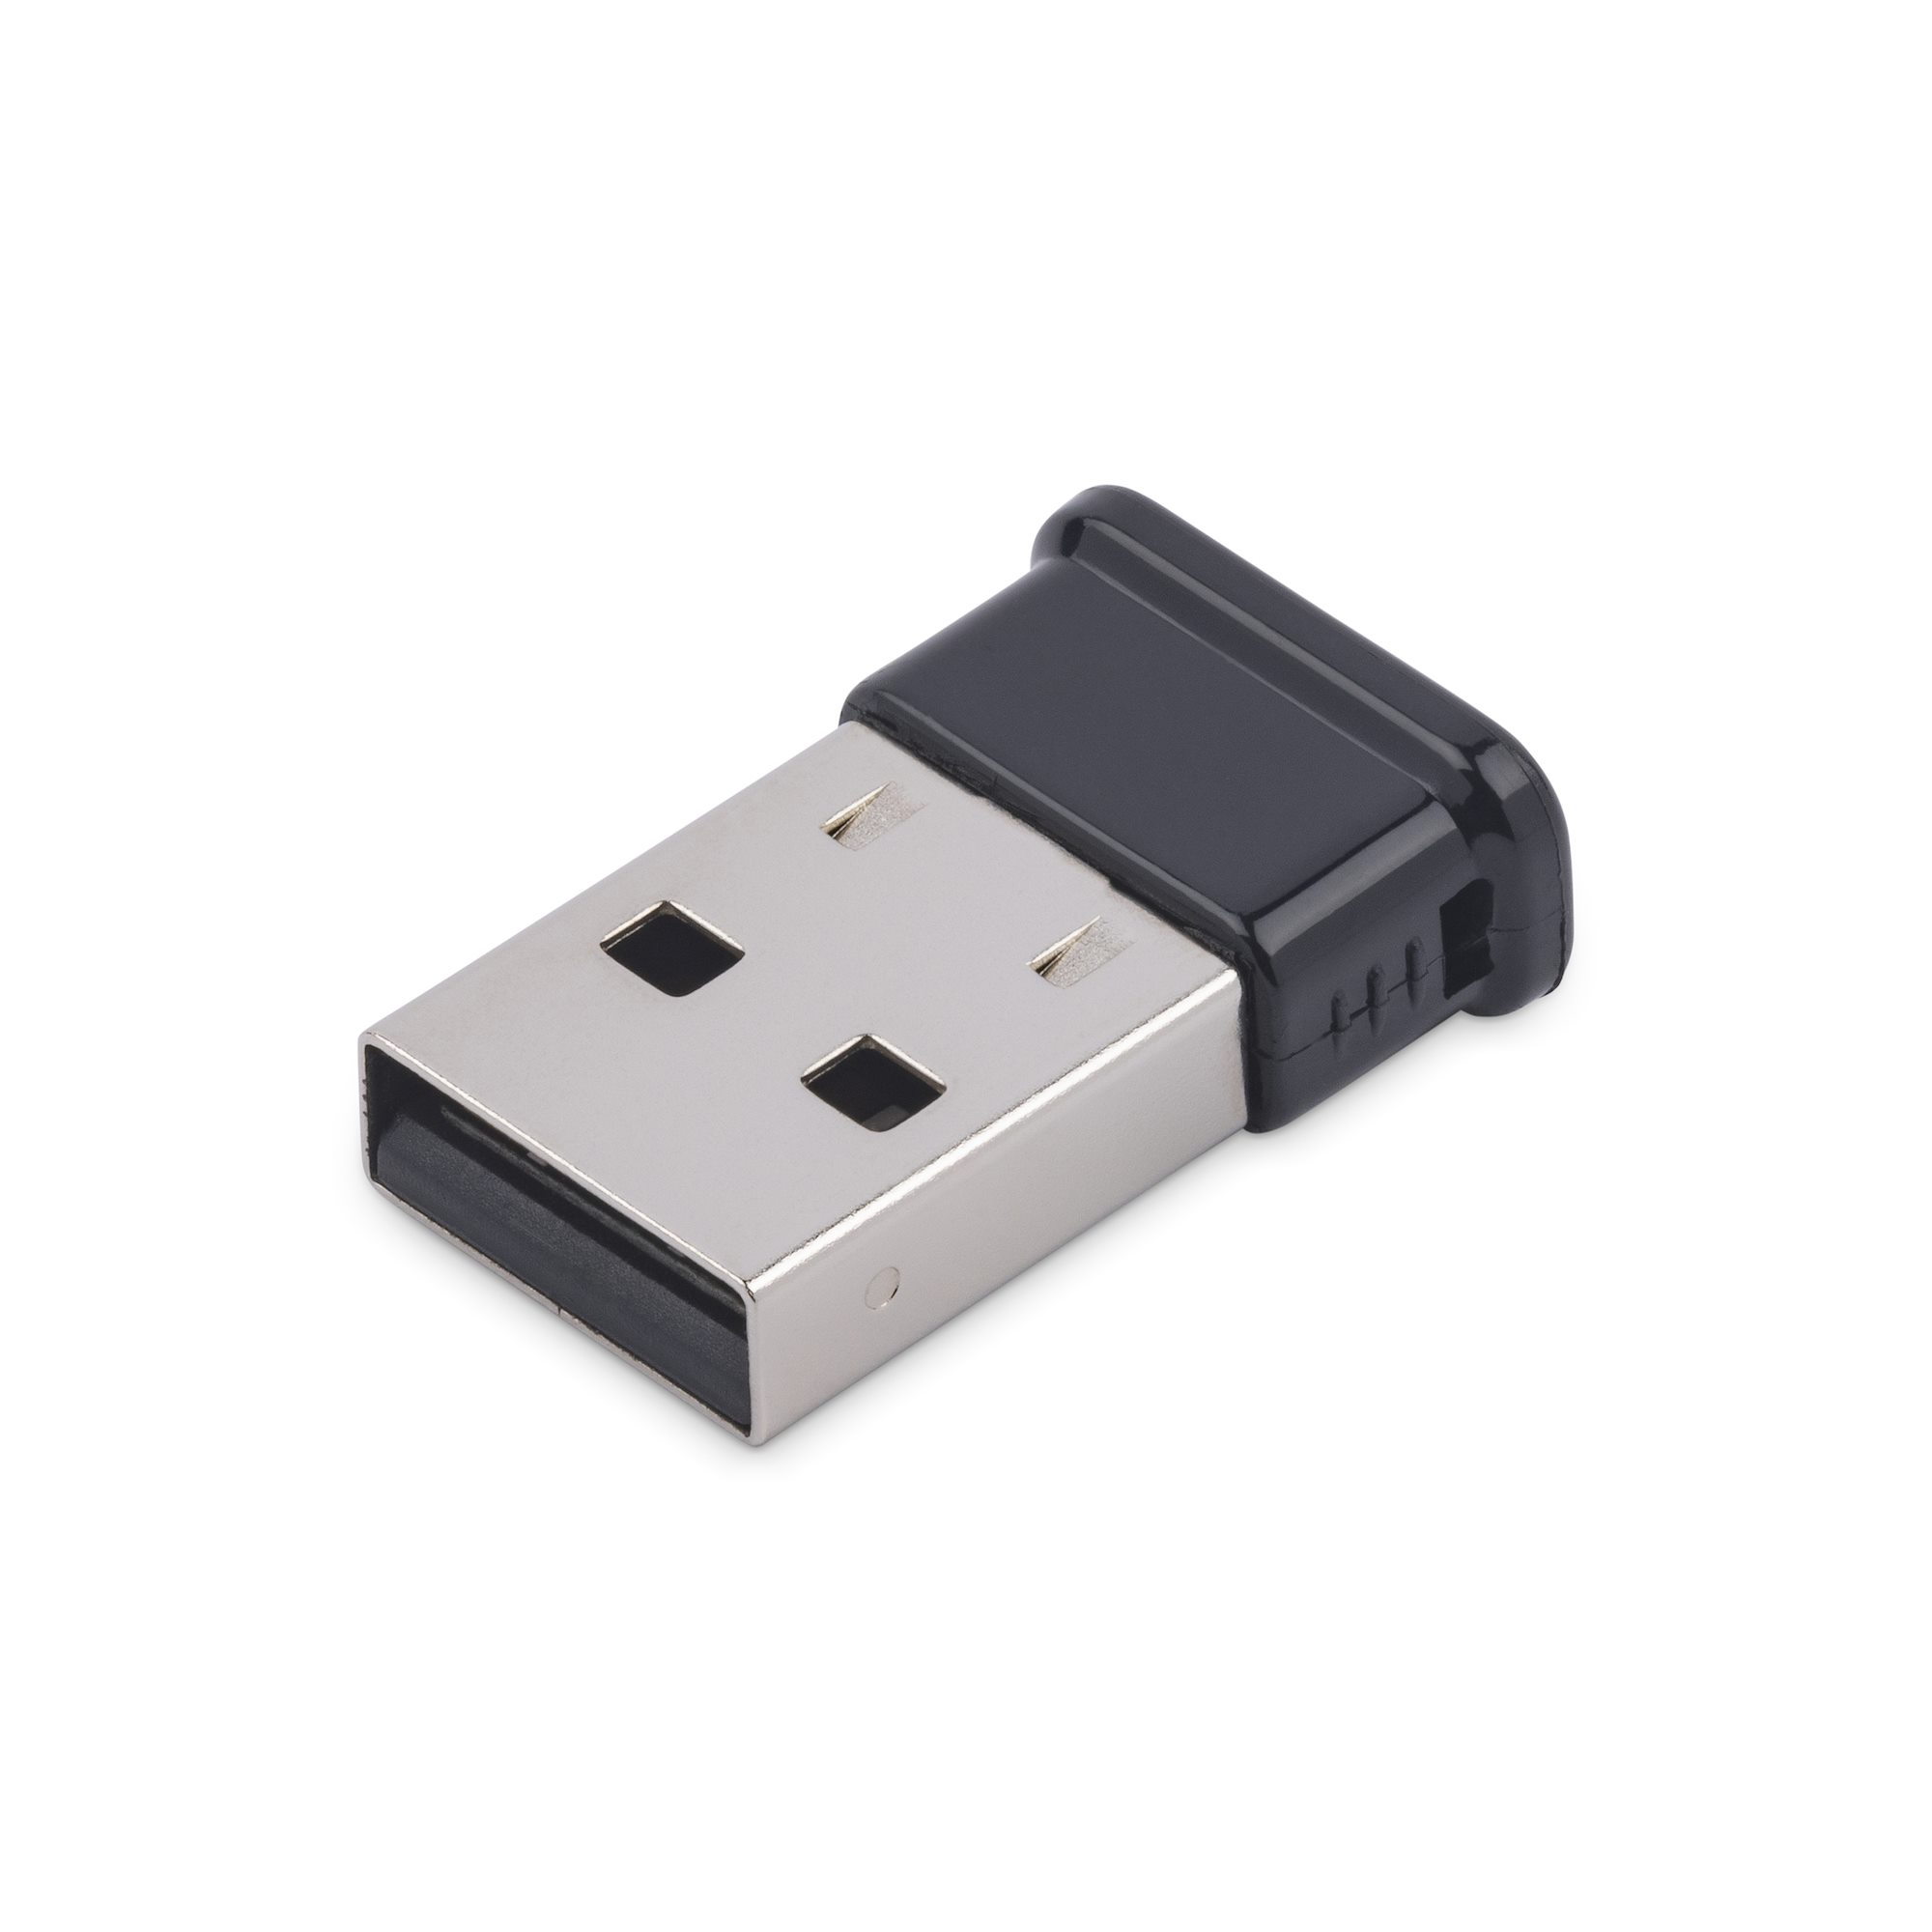 Mini USB Bluetooth 2.1 Adapter - Class 1 - Adaptadores Infrarrojos, y Telecom | StarTech.com España